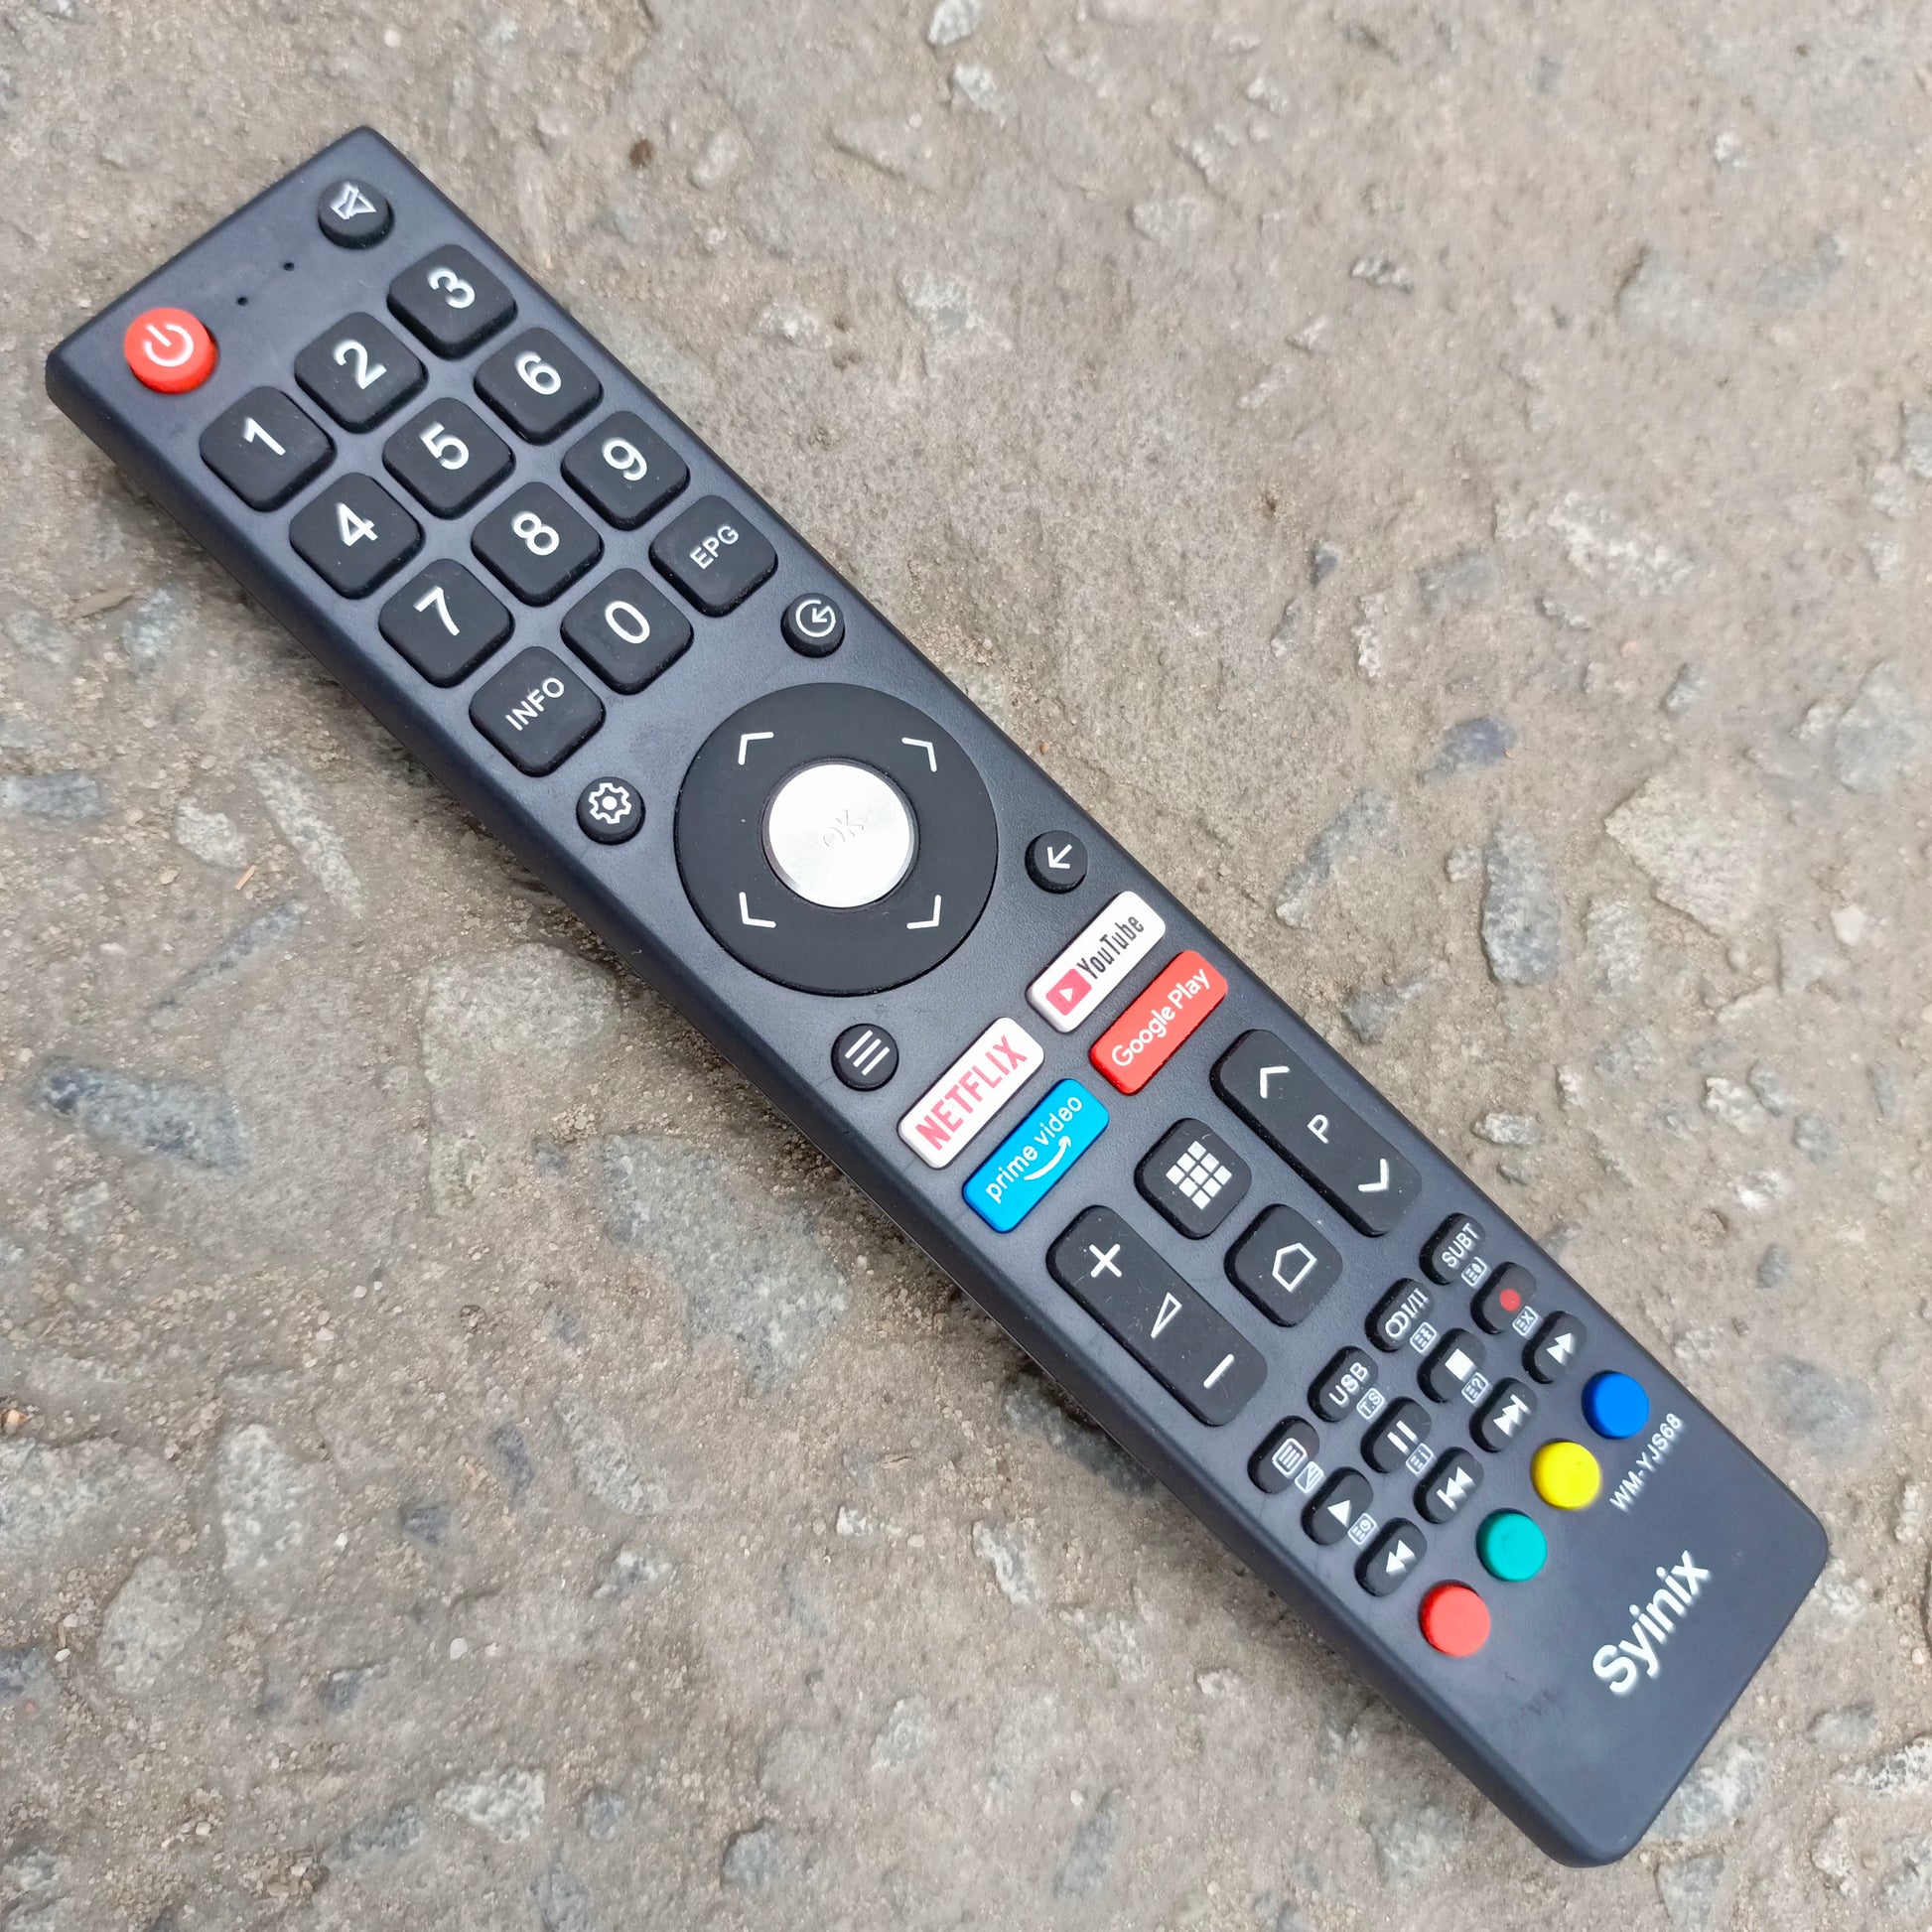 TV SYINIX 24” - Smart Electronics